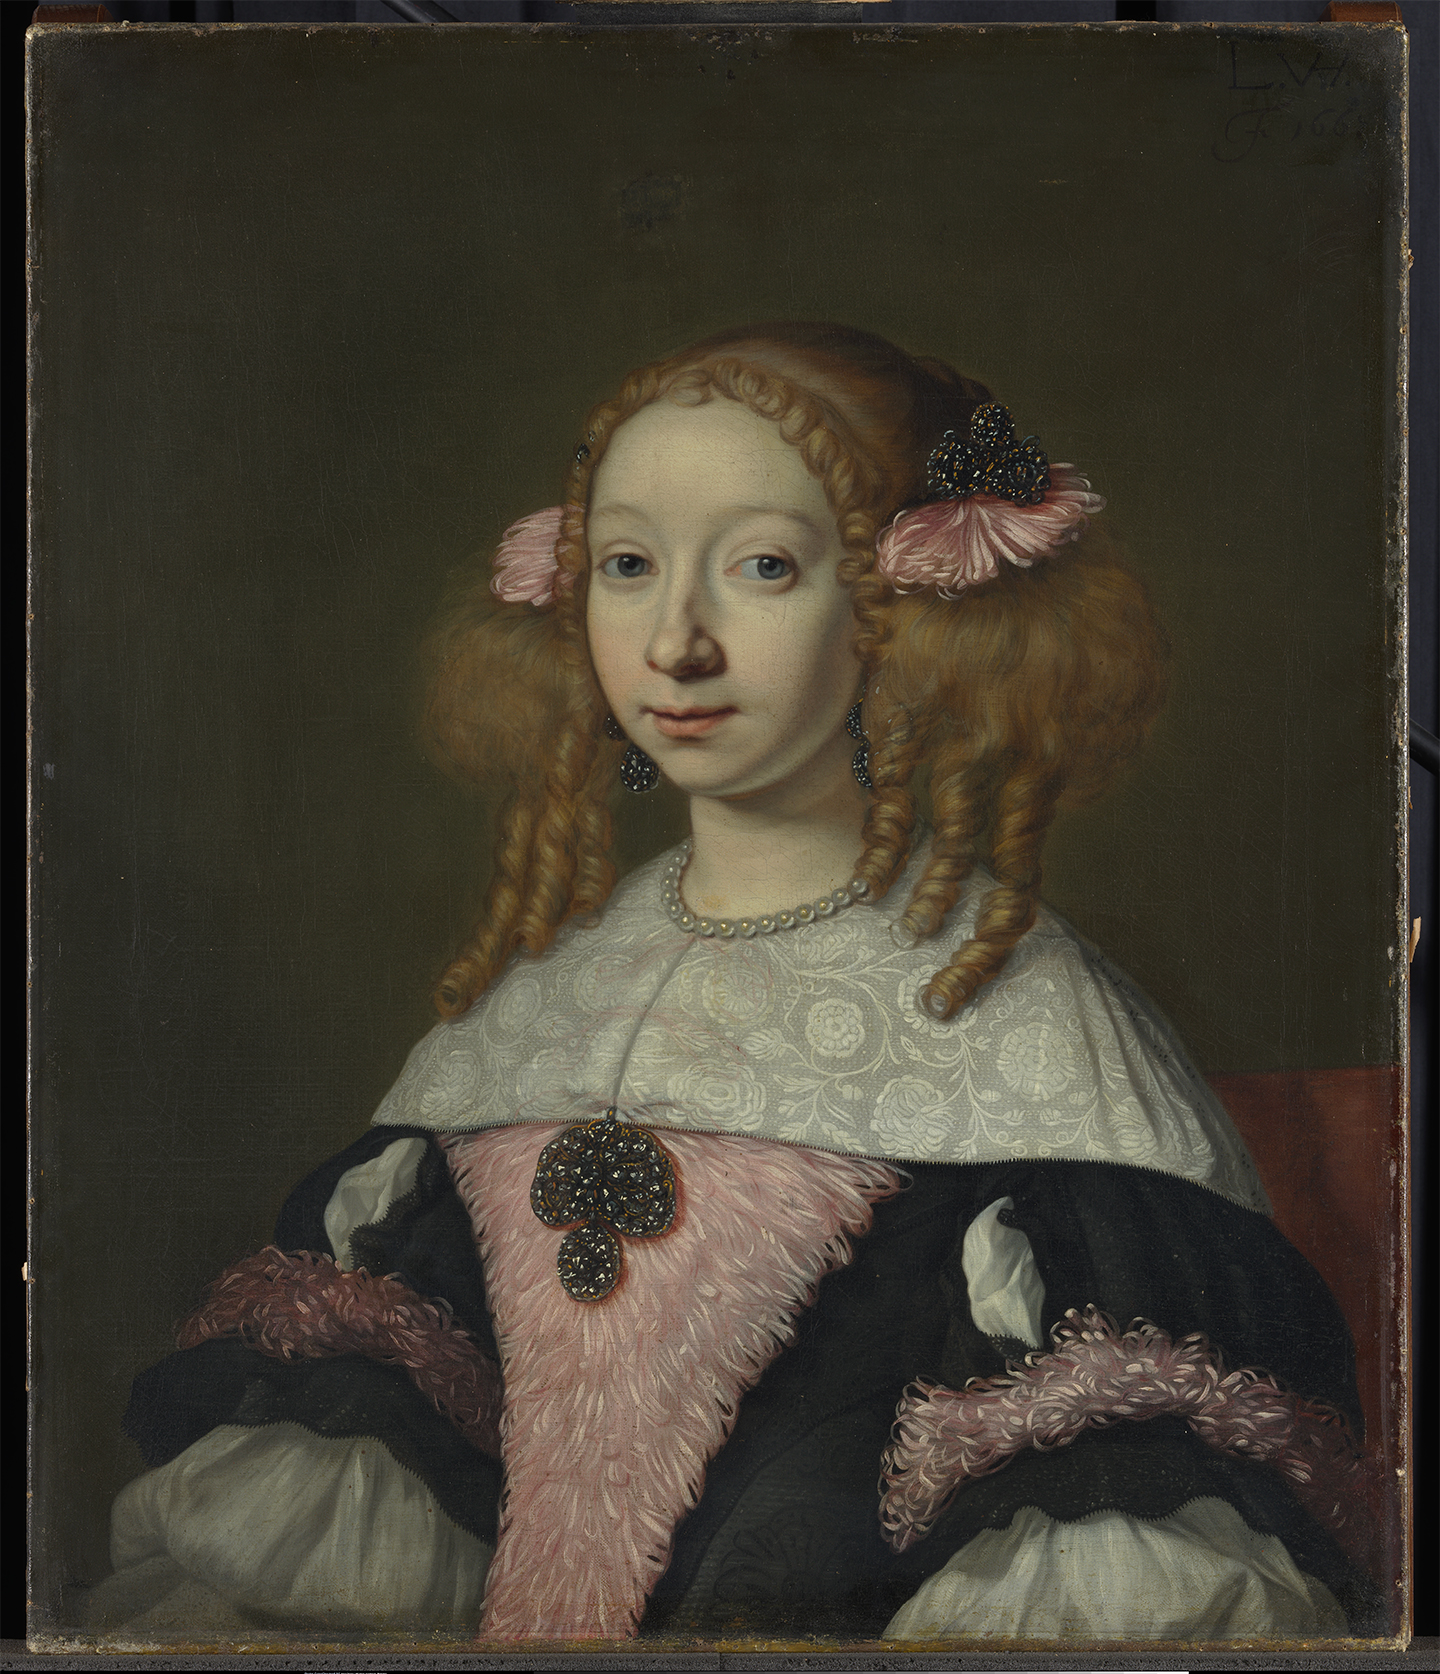 Lodewijk van der Helst, Portrait of Adriana Hinlopen, 1667. Amsterdam, Rijksmuseum © Rijksmuseum, Amsterdam. Courtesy of Musée des Arts Décoratifs